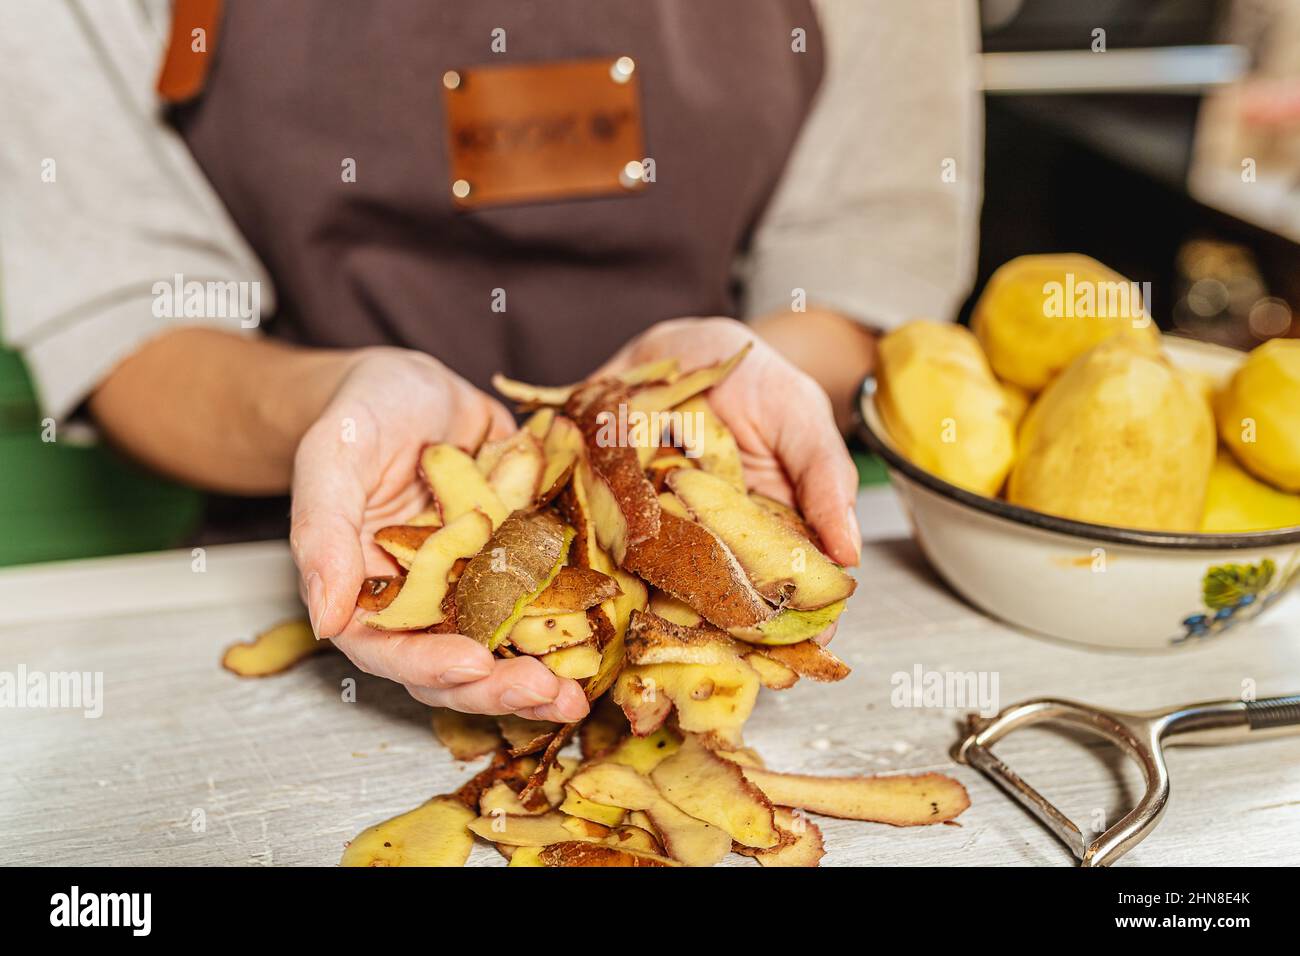 Pelures de pommes de terre dans les mains de la cuisinière femelle. Utilisation et transformation des déchets alimentaires, compostage, afin d'enrichir la fertilité des sols. Tri des ordures à la maison Banque D'Images